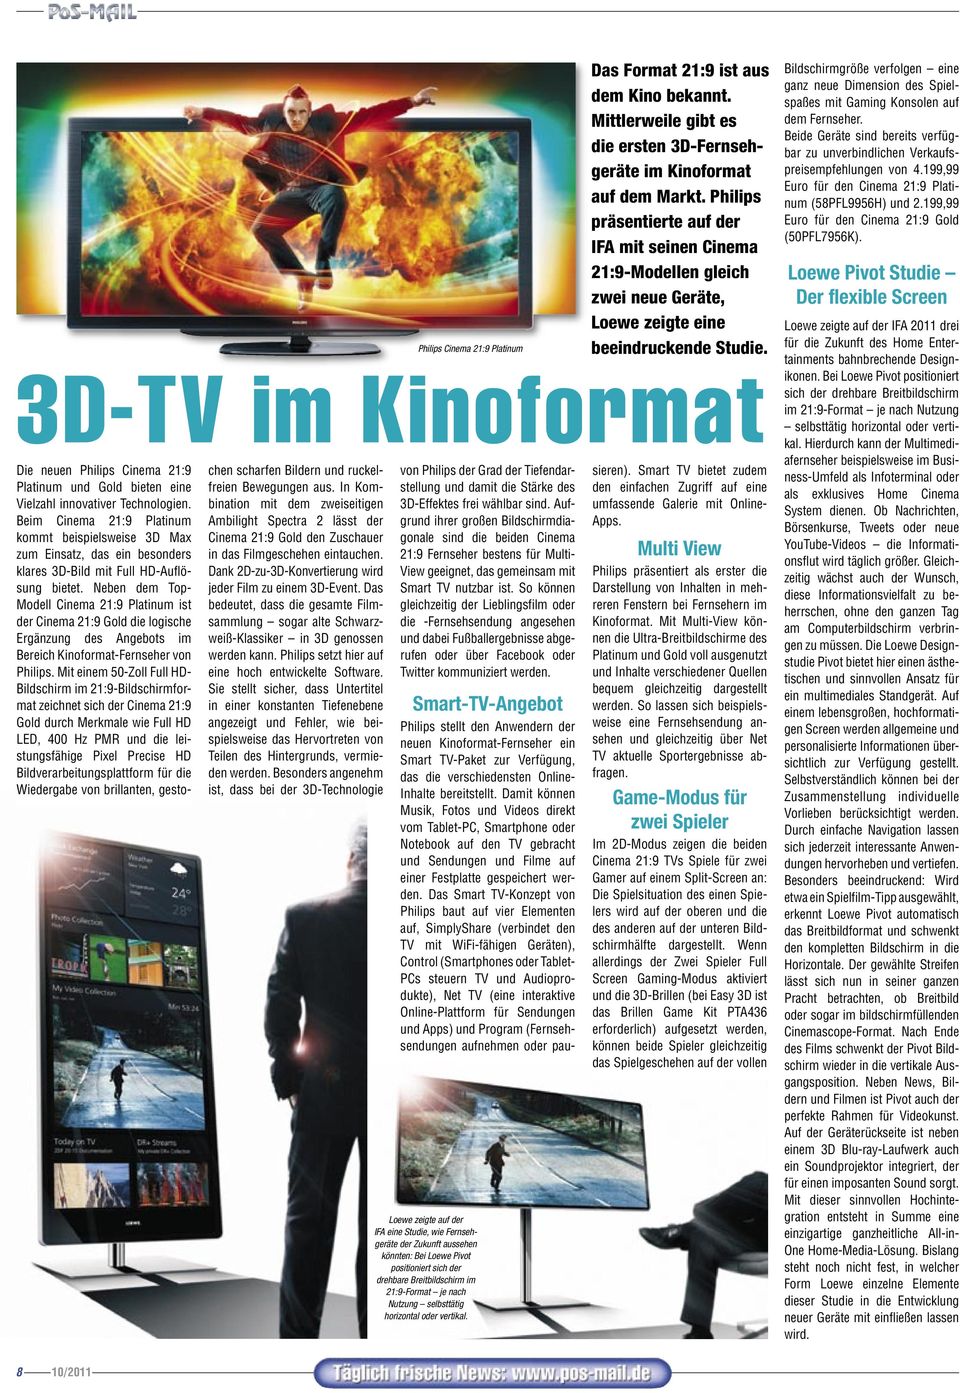 3D-TV im Kinoformat Die neuen Philips Cinema 21:9 Platinum und Gold bieten eine Vielzahl innovativer Technologien.